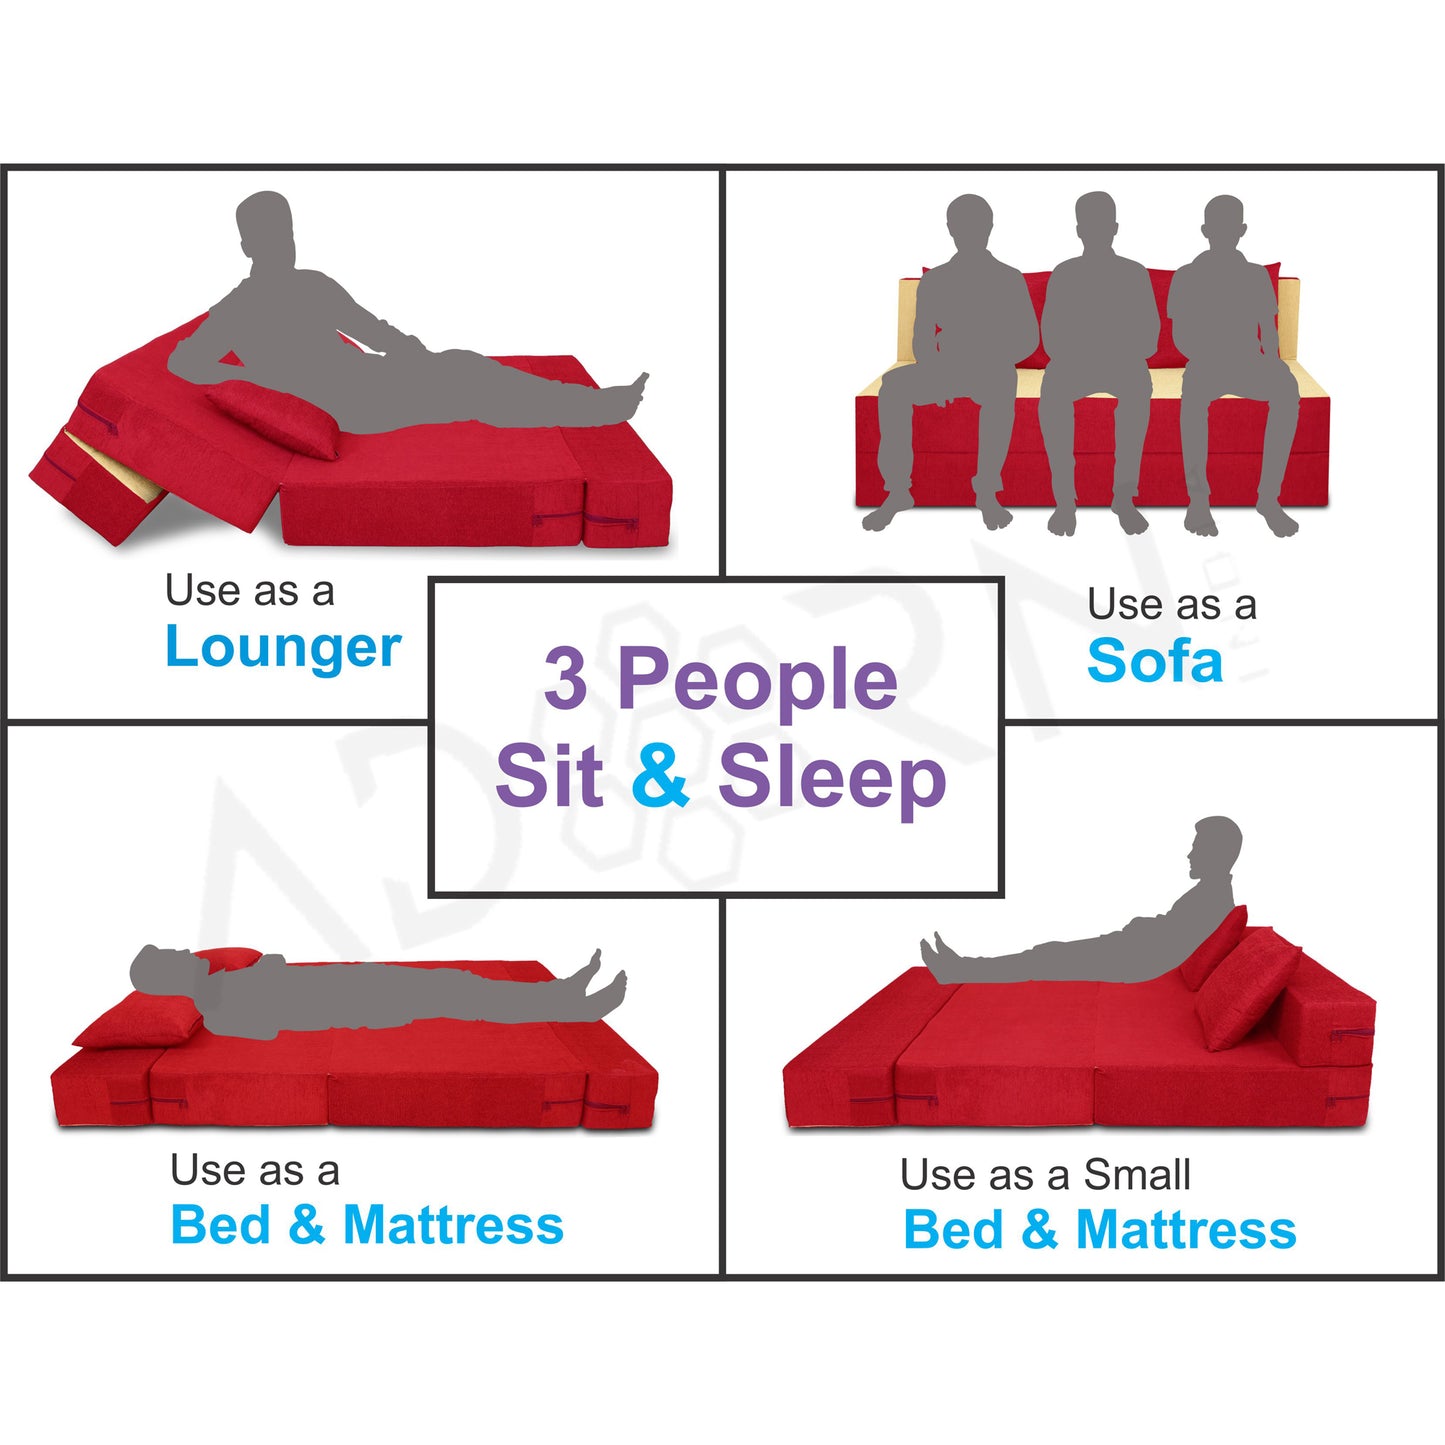 Adorn india Easy Three Seater Sofa Cum Bed(Red & Beige) 6'x6'